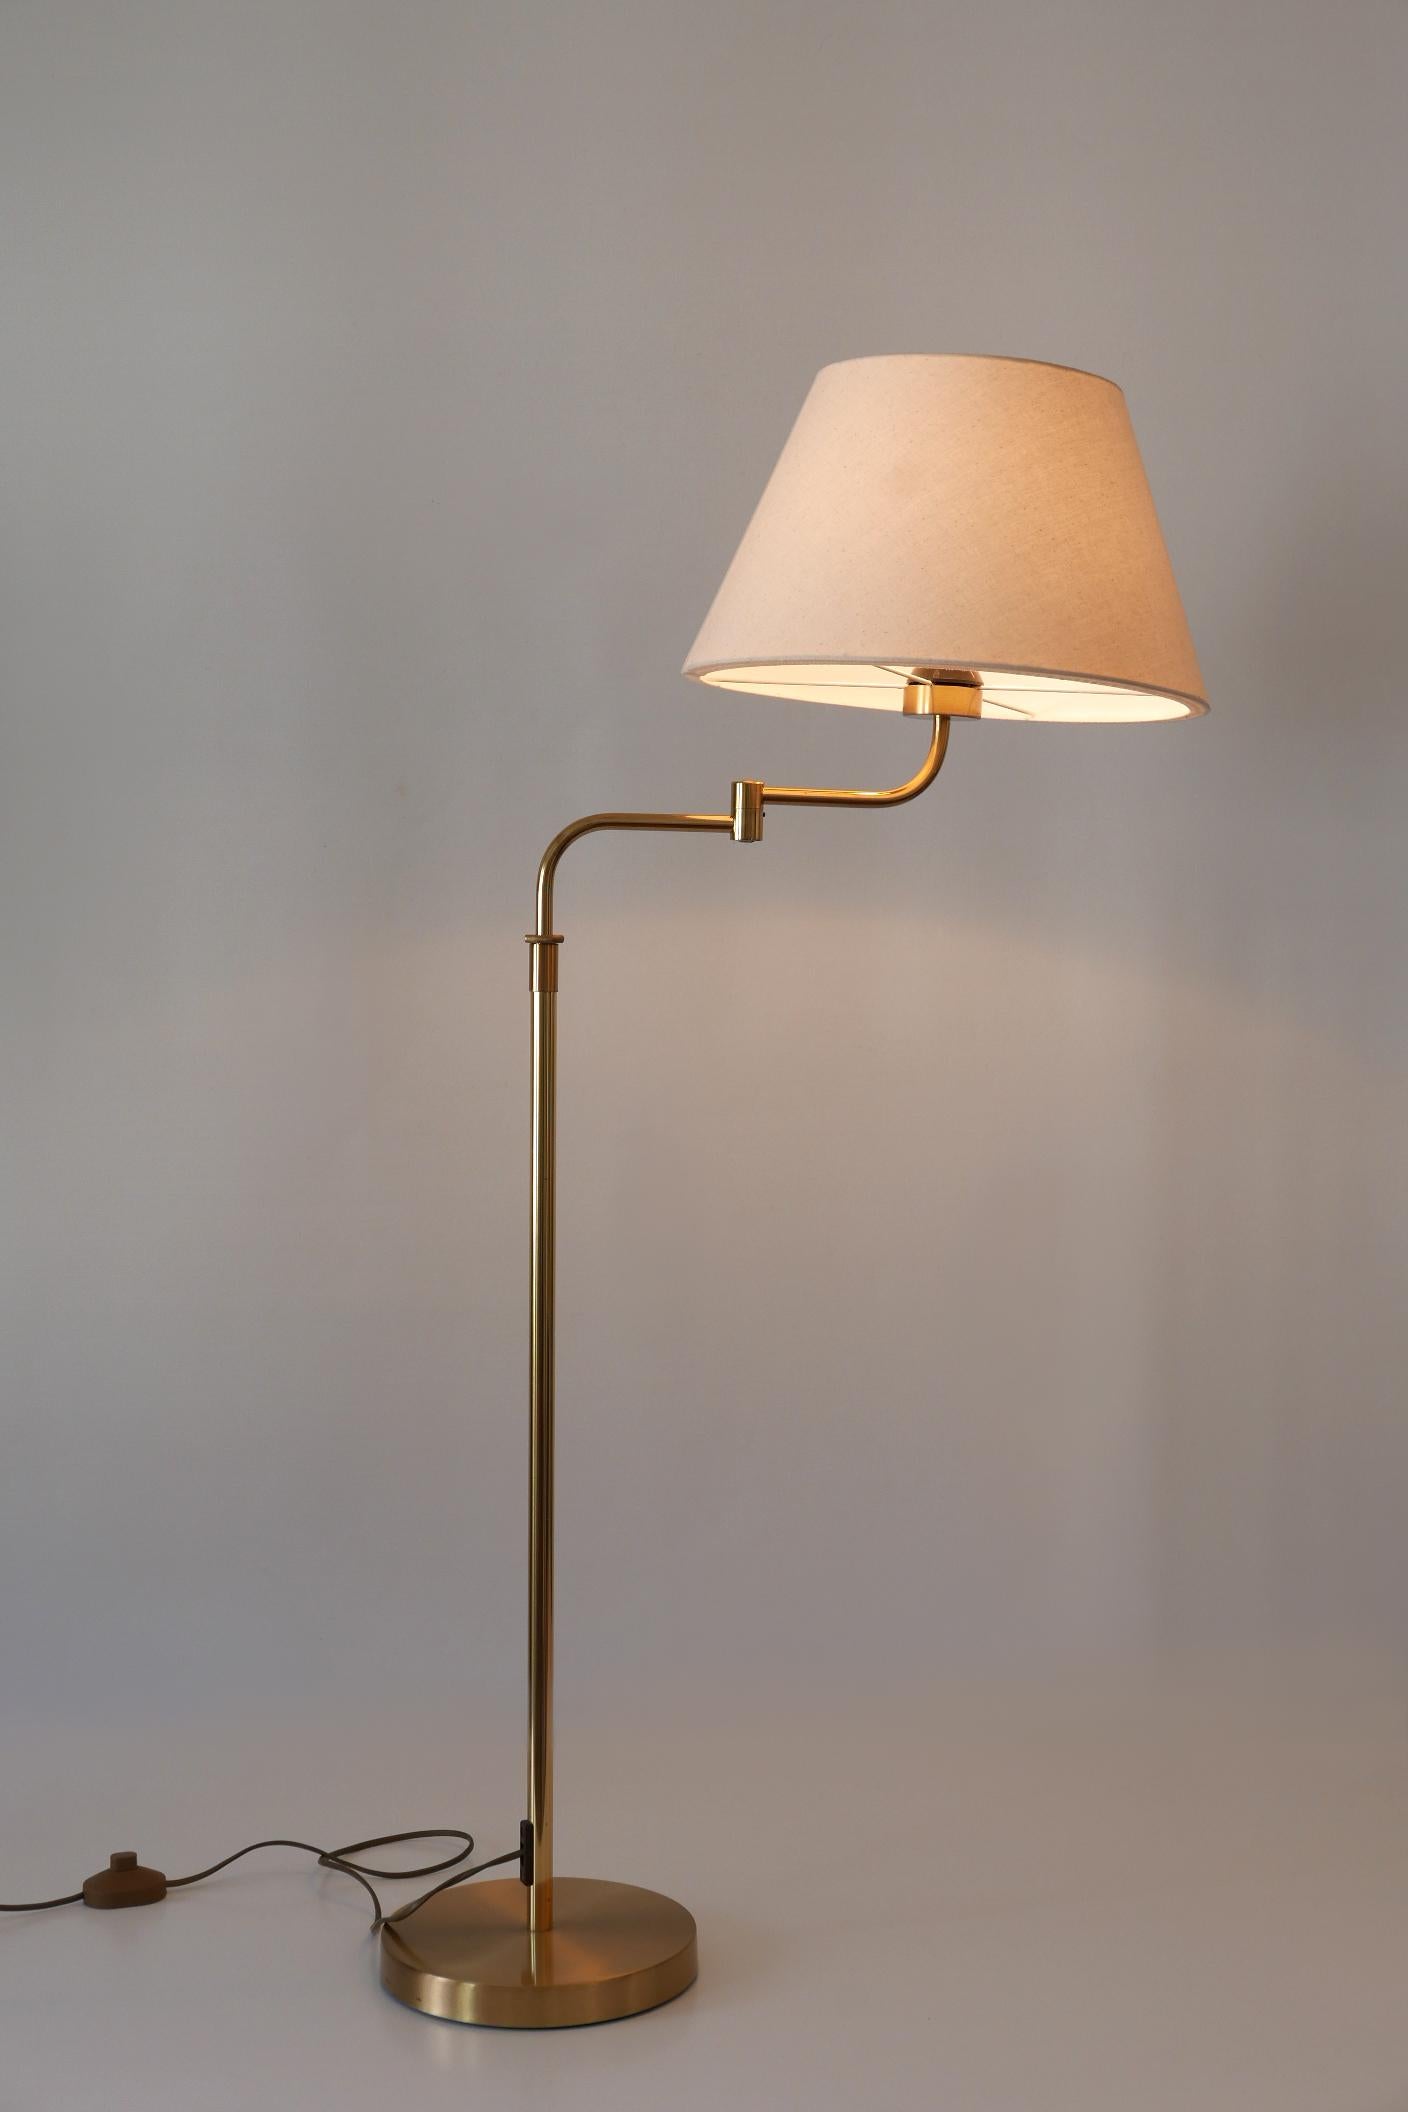 Adjustable Vintage Floor Lamp or Reading Light by Sölken Leuchten Germany 1980s For Sale 7